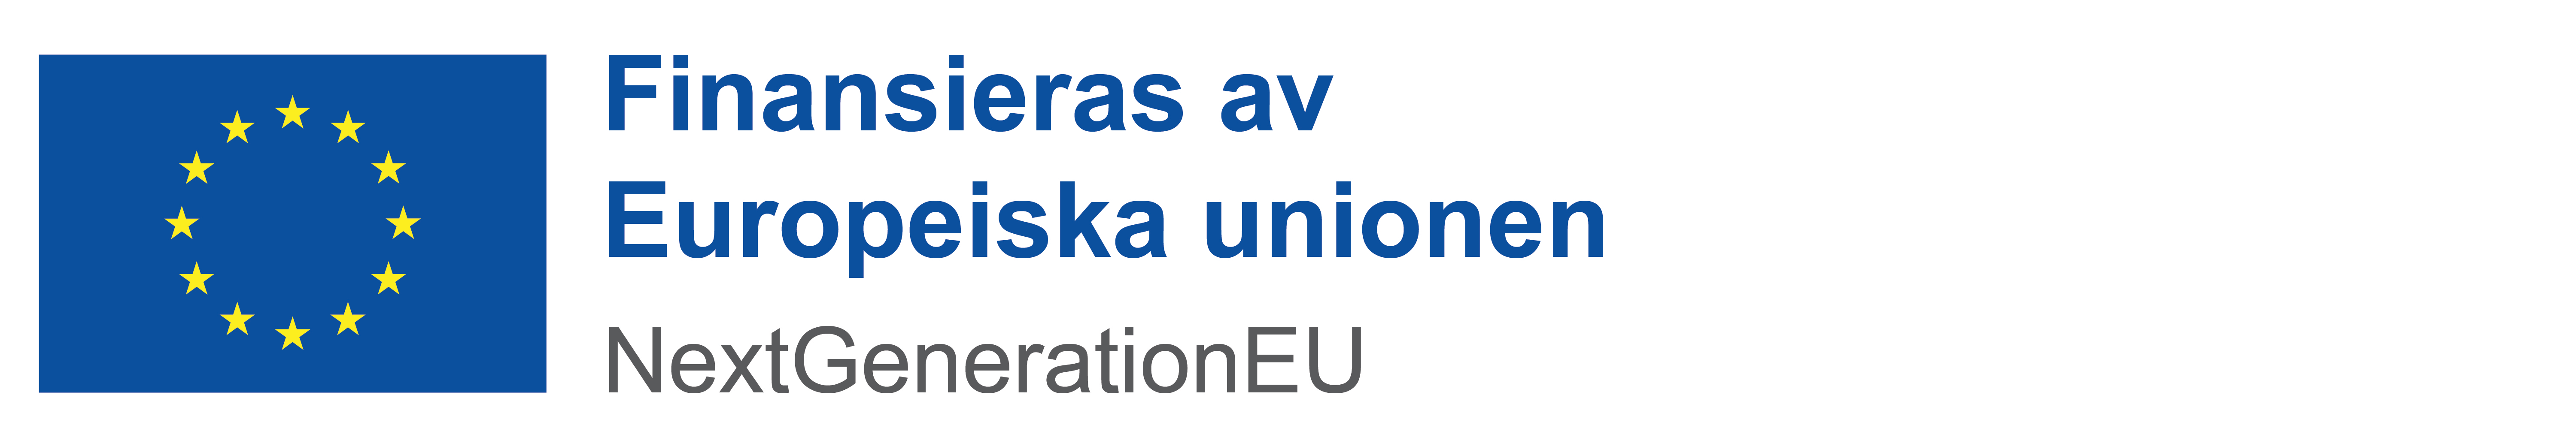 EU-flagga text: Finansieras av Europeiska Unionen nextgenerationeu.